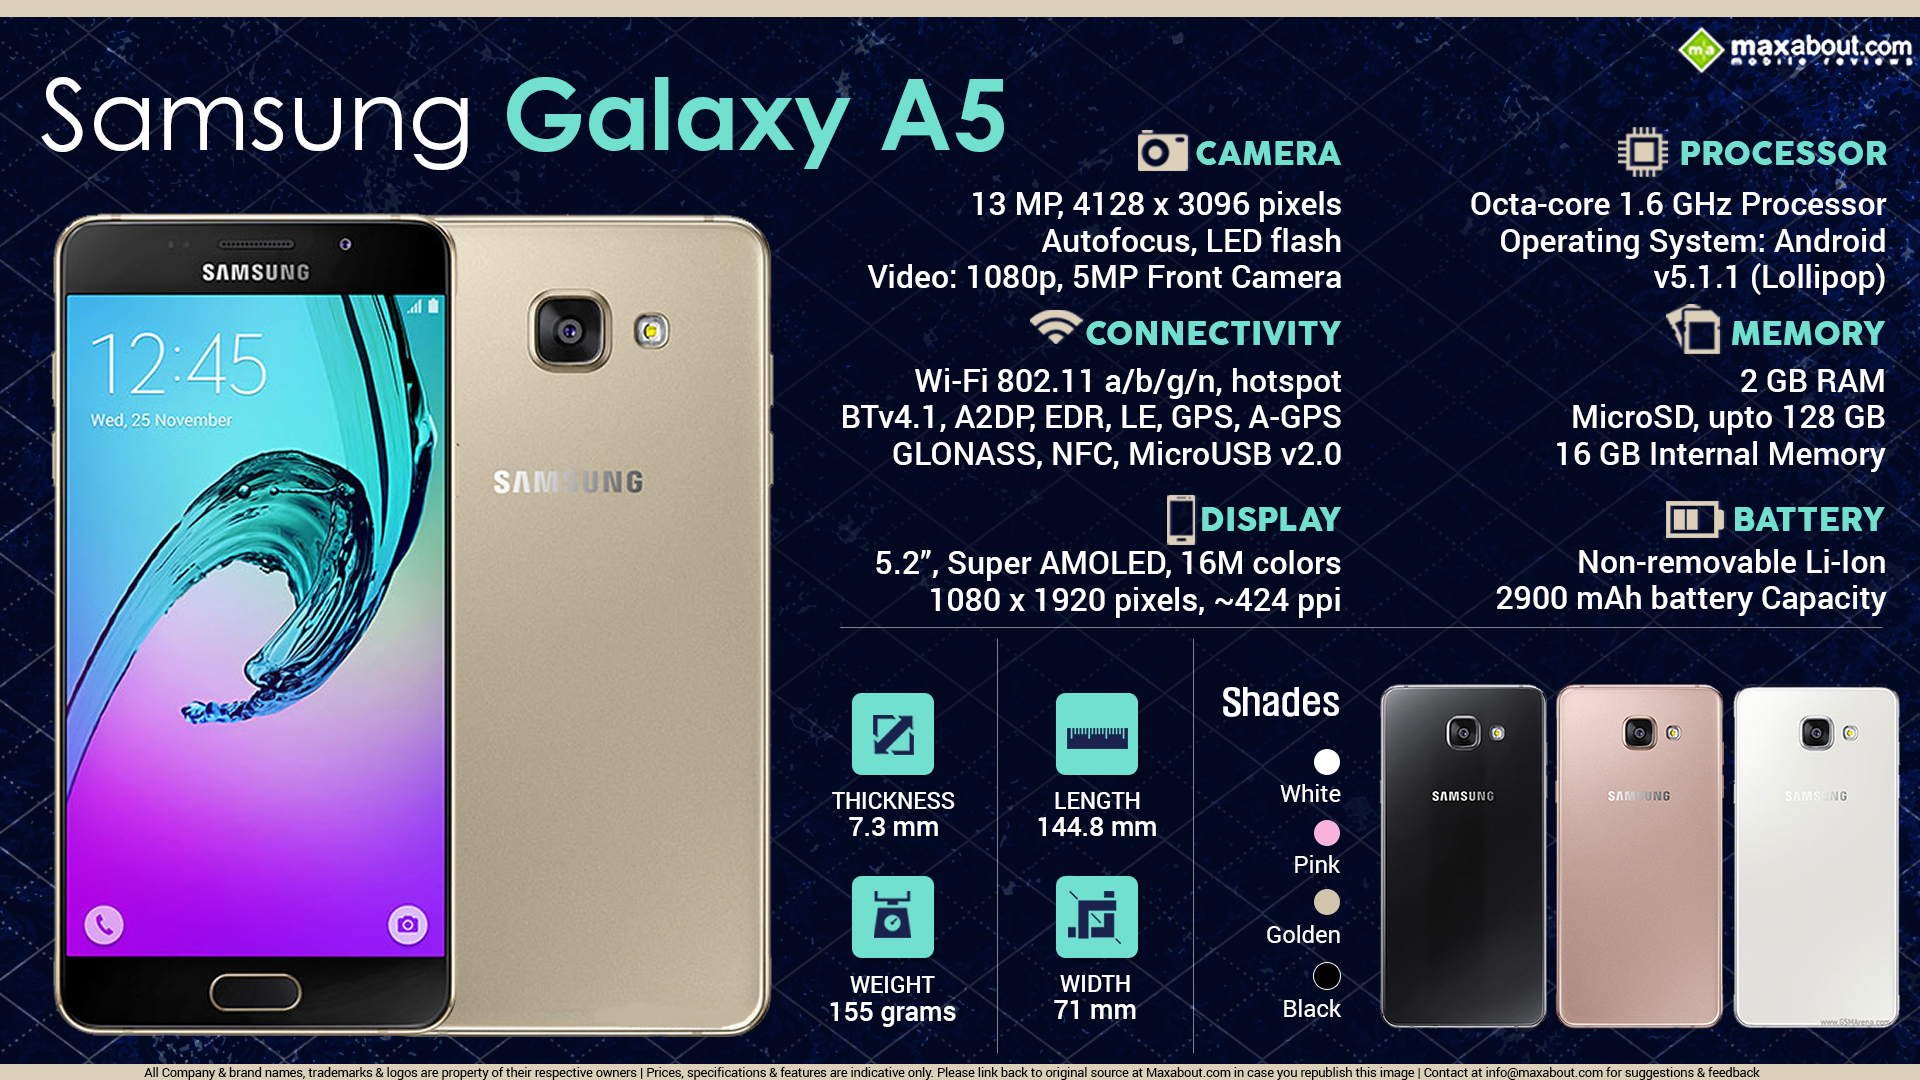 Samsung Galaxy A41 64gb Antutu